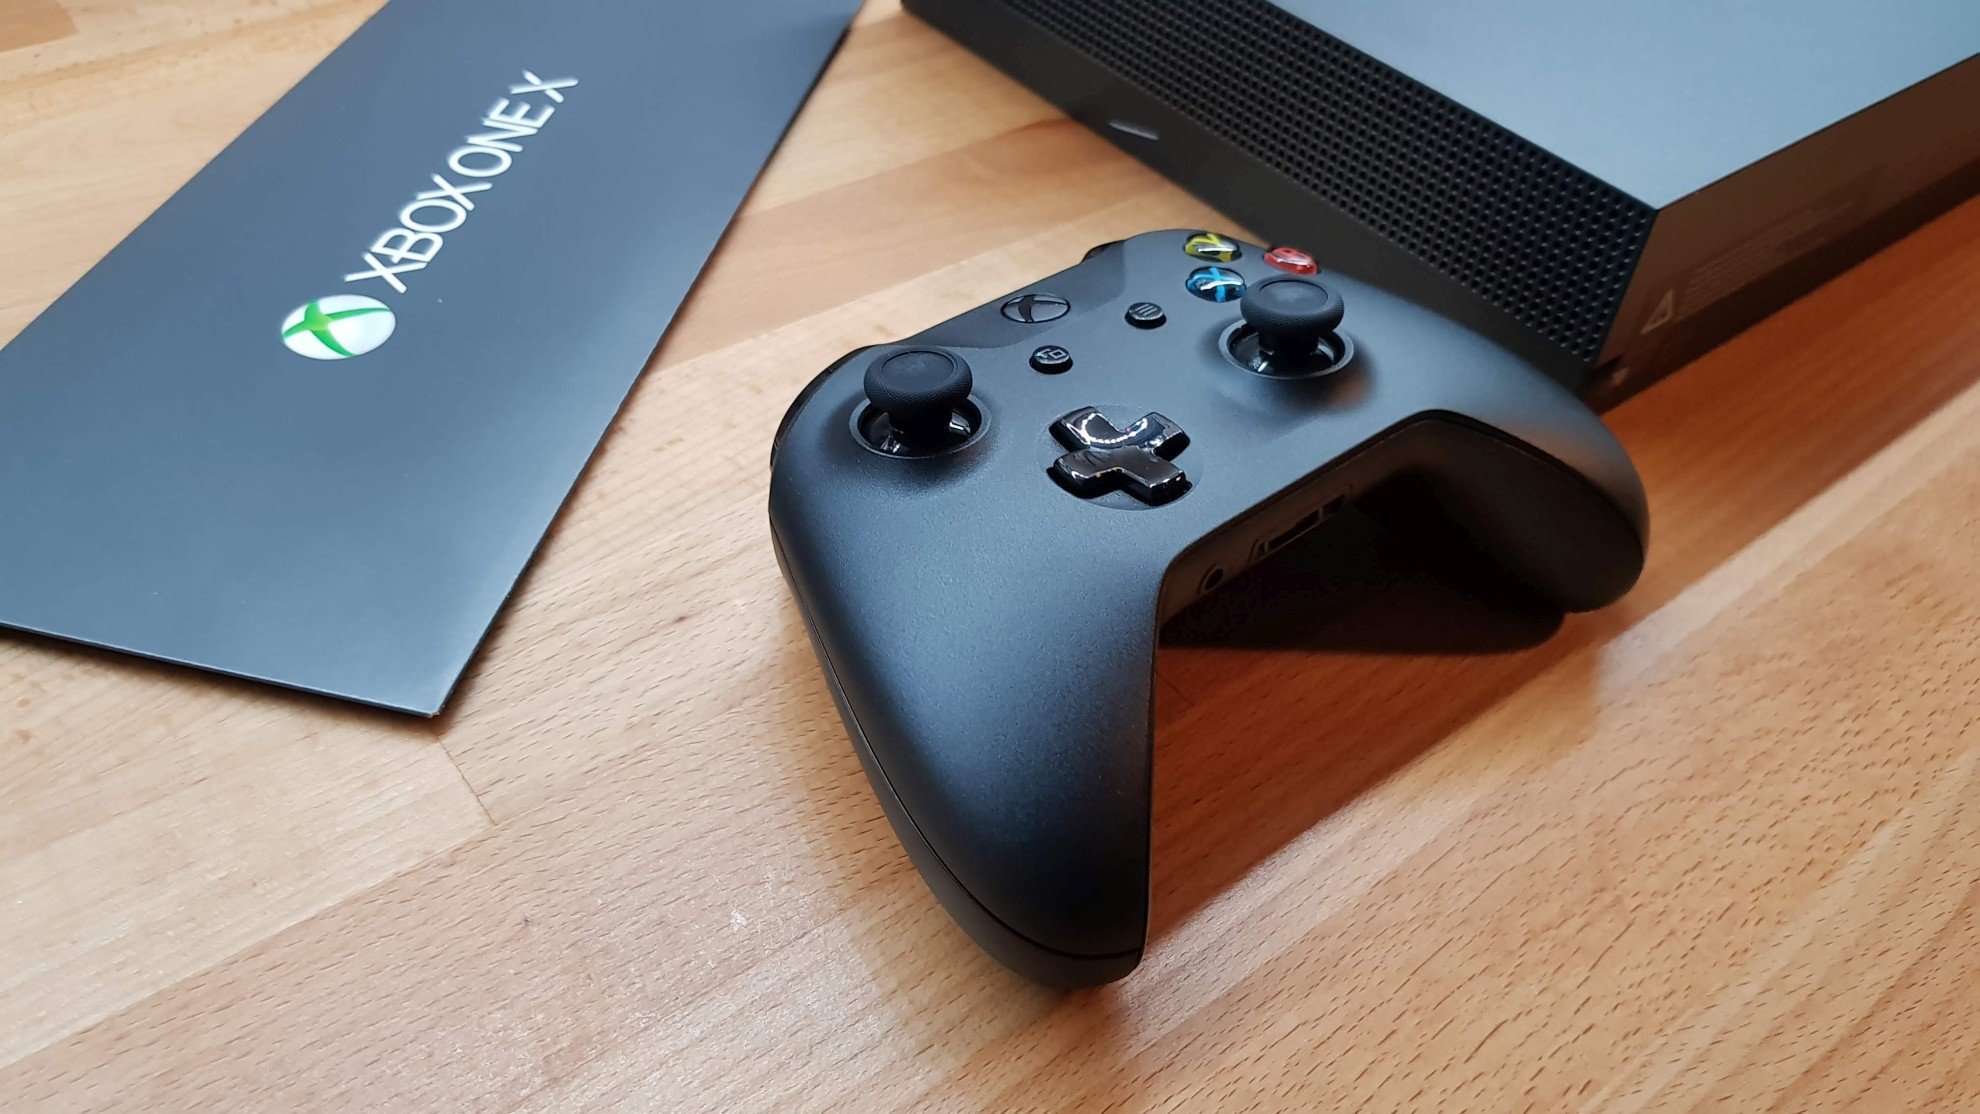 Konsole mit Sprachsteuerung: So kontrolliert ihr die Xbox One mit Alexa